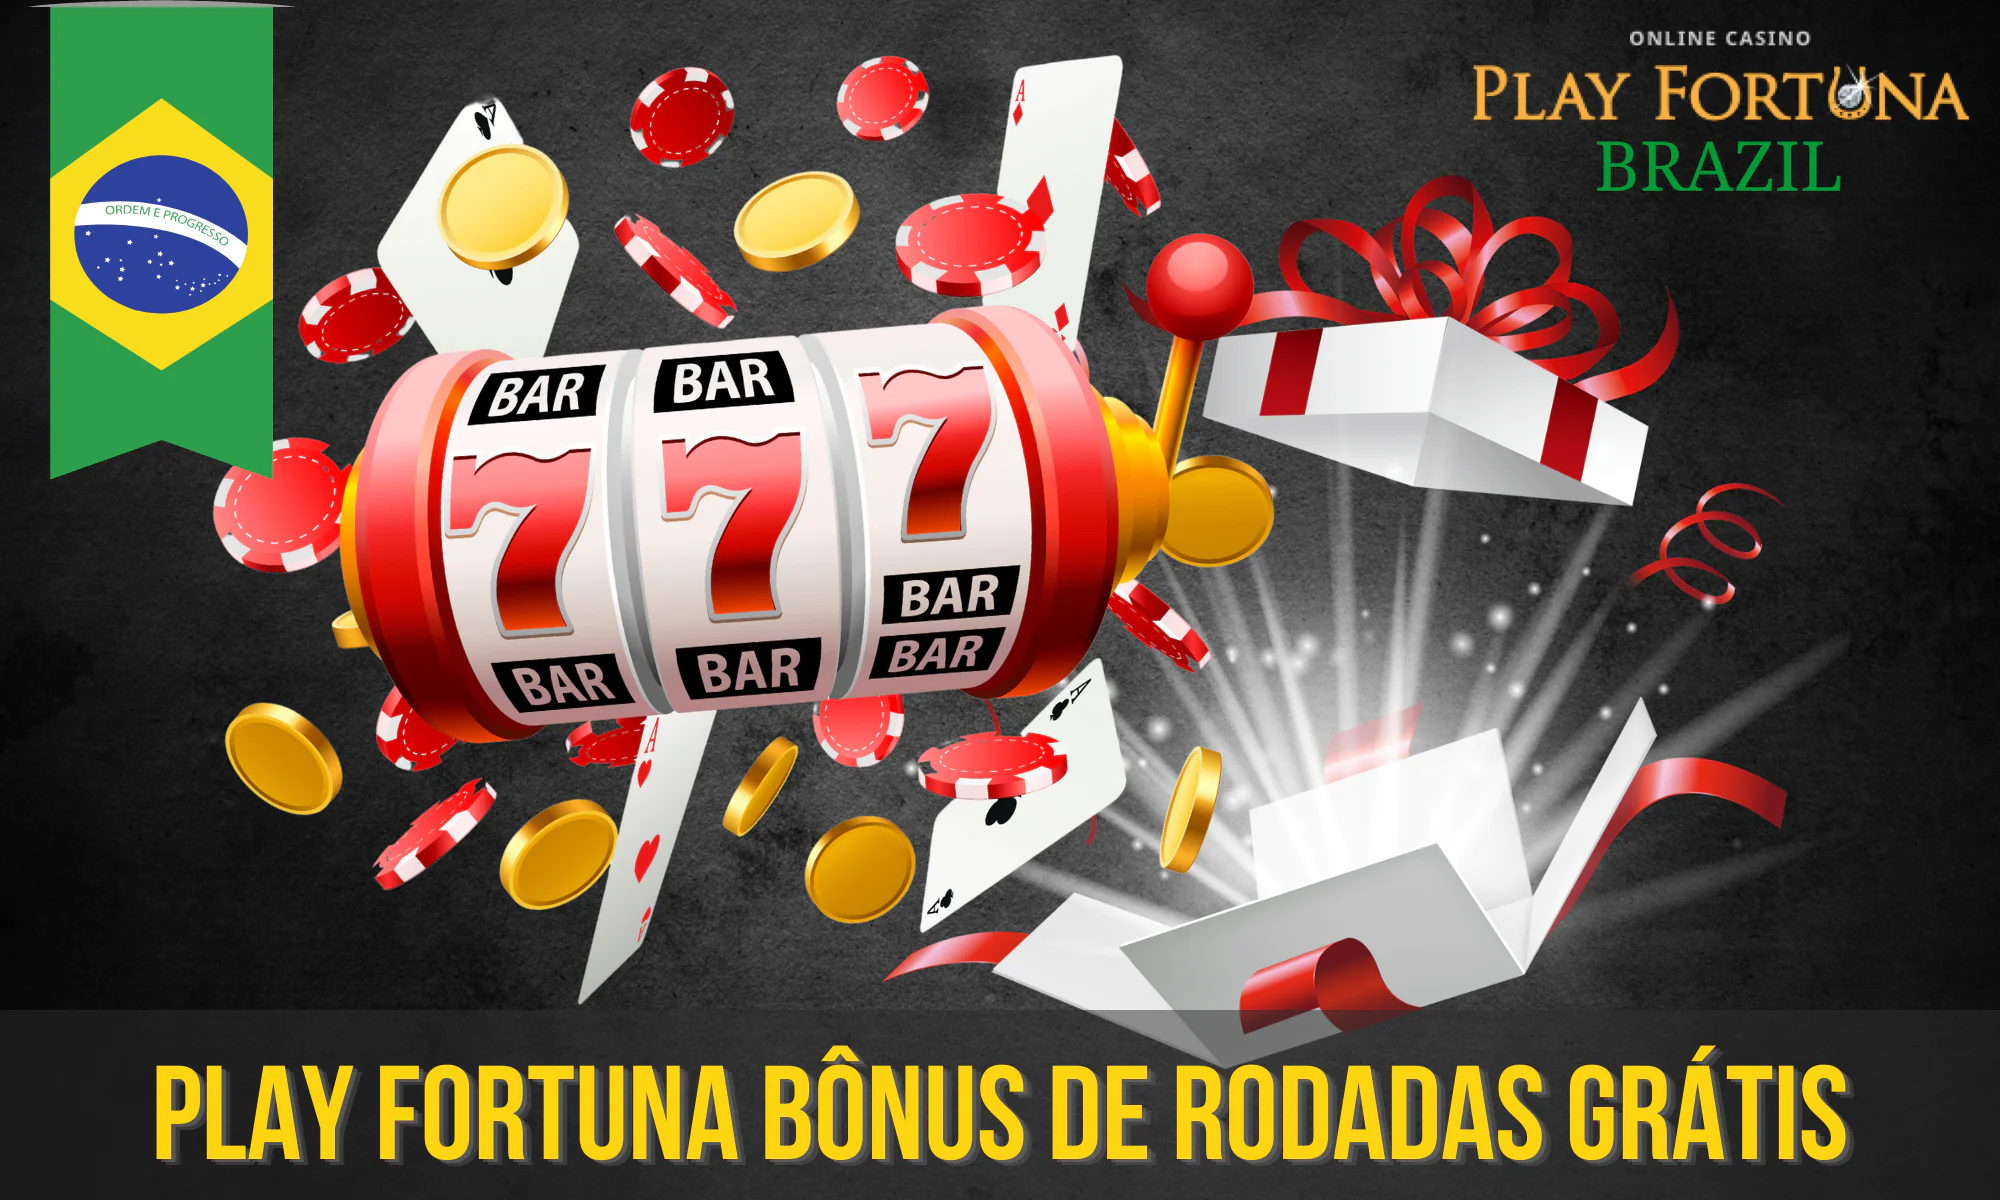 Os bônus com rodadas grátis em jogos de caça-níqueis estão disponíveis no Play Fortuna